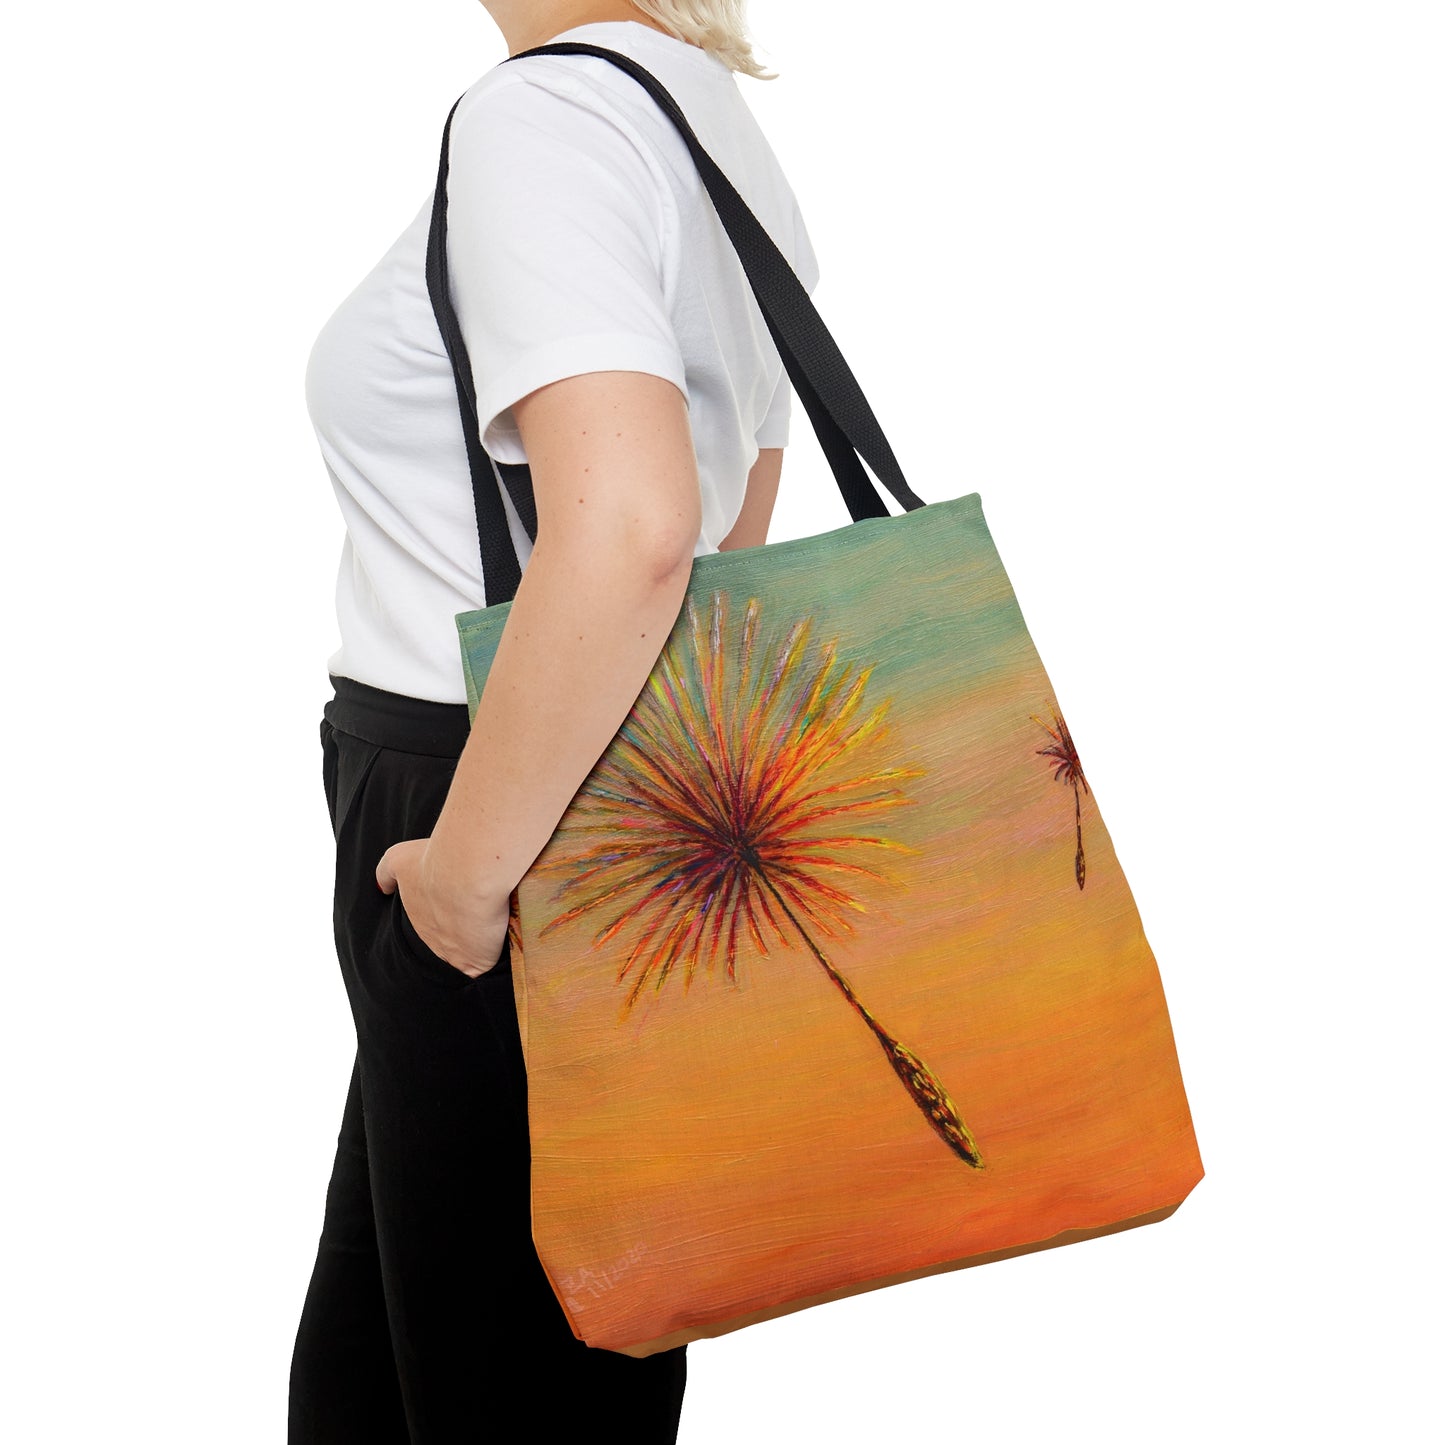 Dandelion Tote Bag, 18 x 17 in